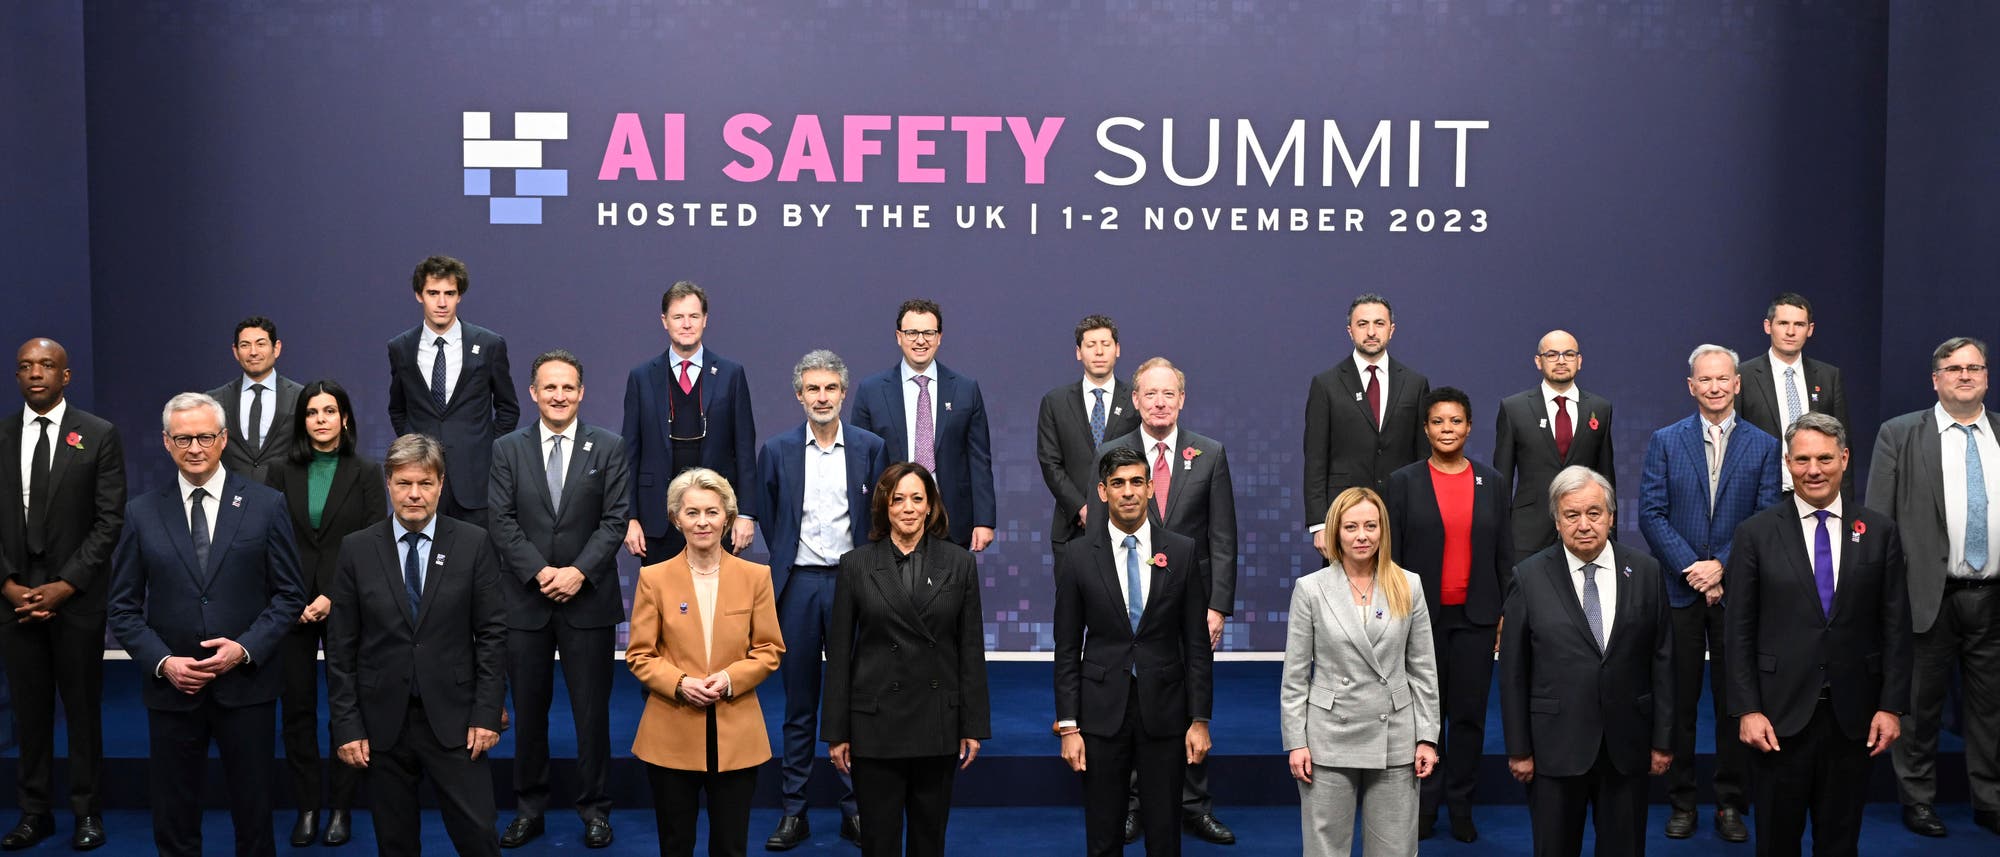 Gruppenfoto der Regierungschefs vom AI Safety Summit in London, 2. November 2023.